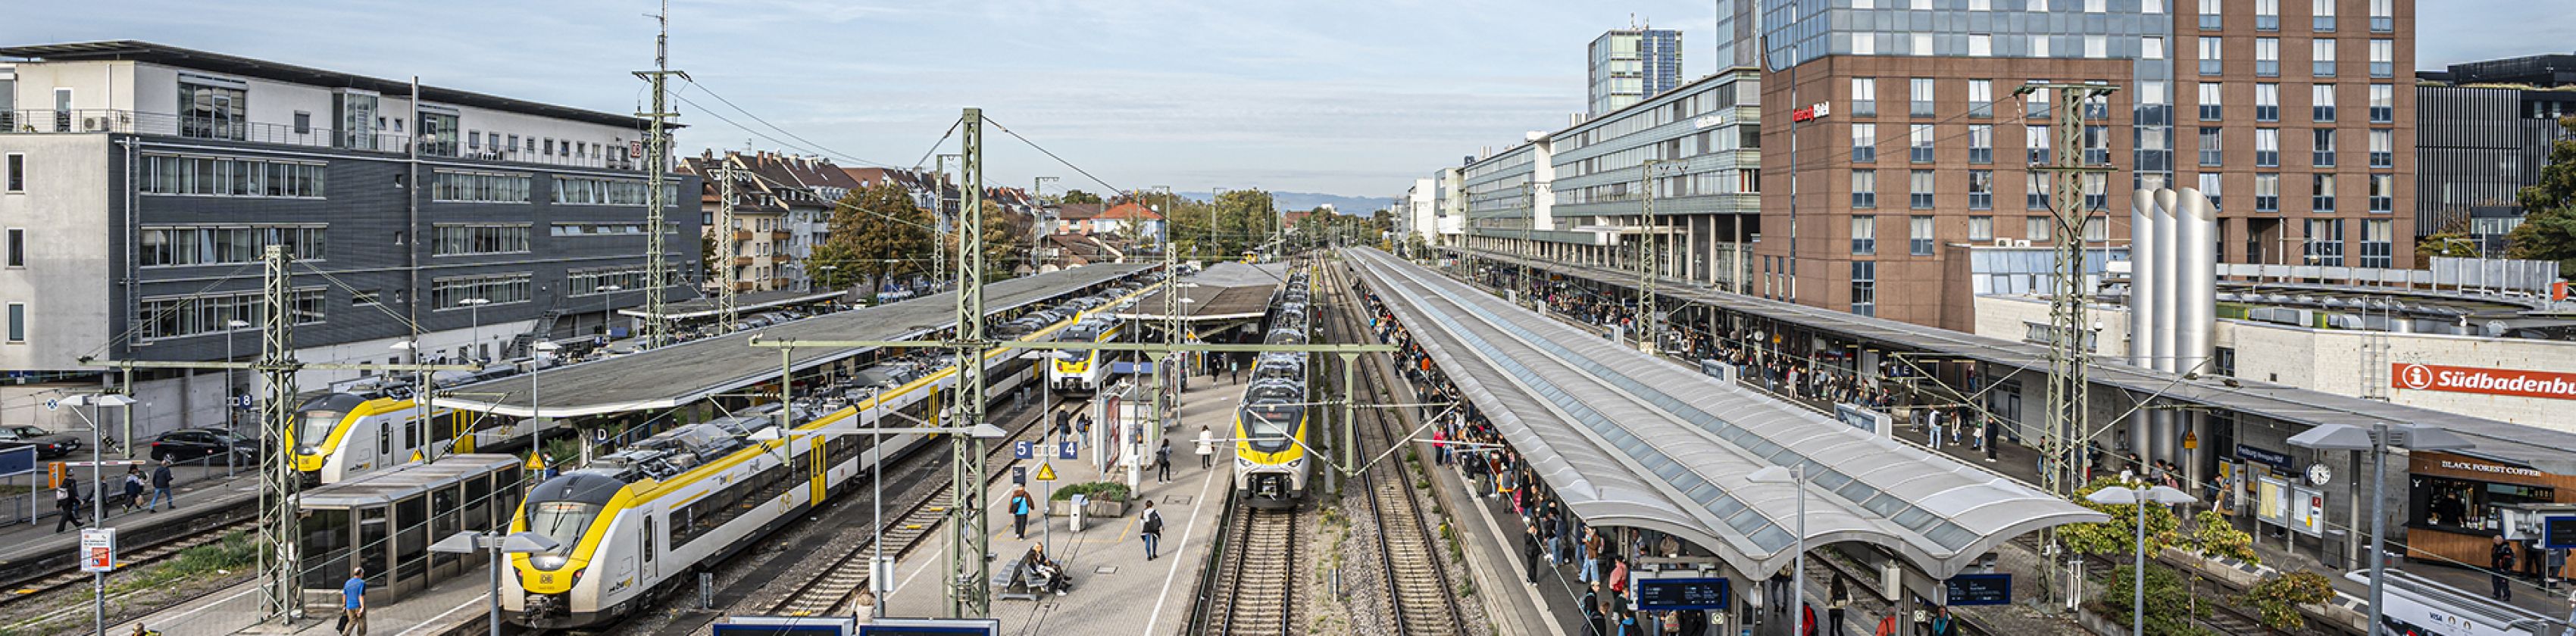 Hauptbahnhof-FWTM-Spiegelhalter (5)